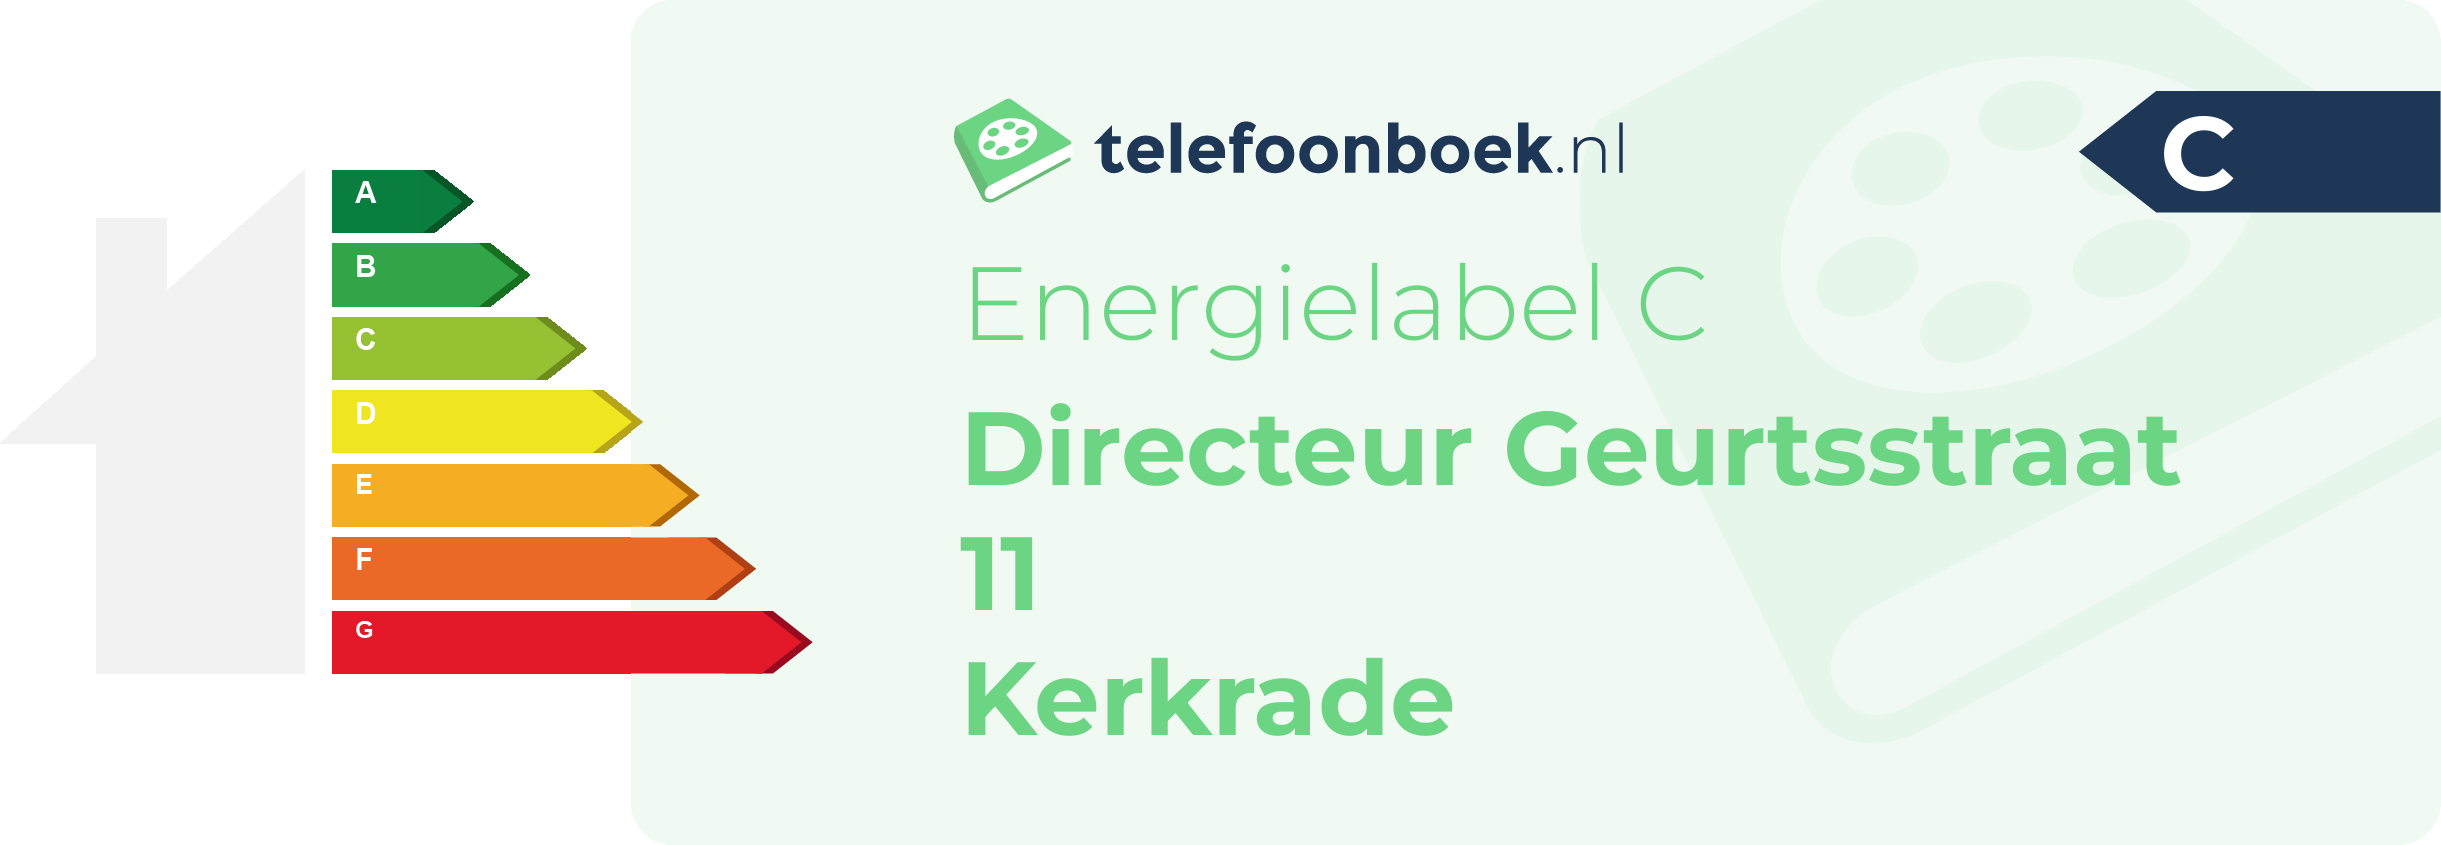 Energielabel Directeur Geurtsstraat 11 Kerkrade